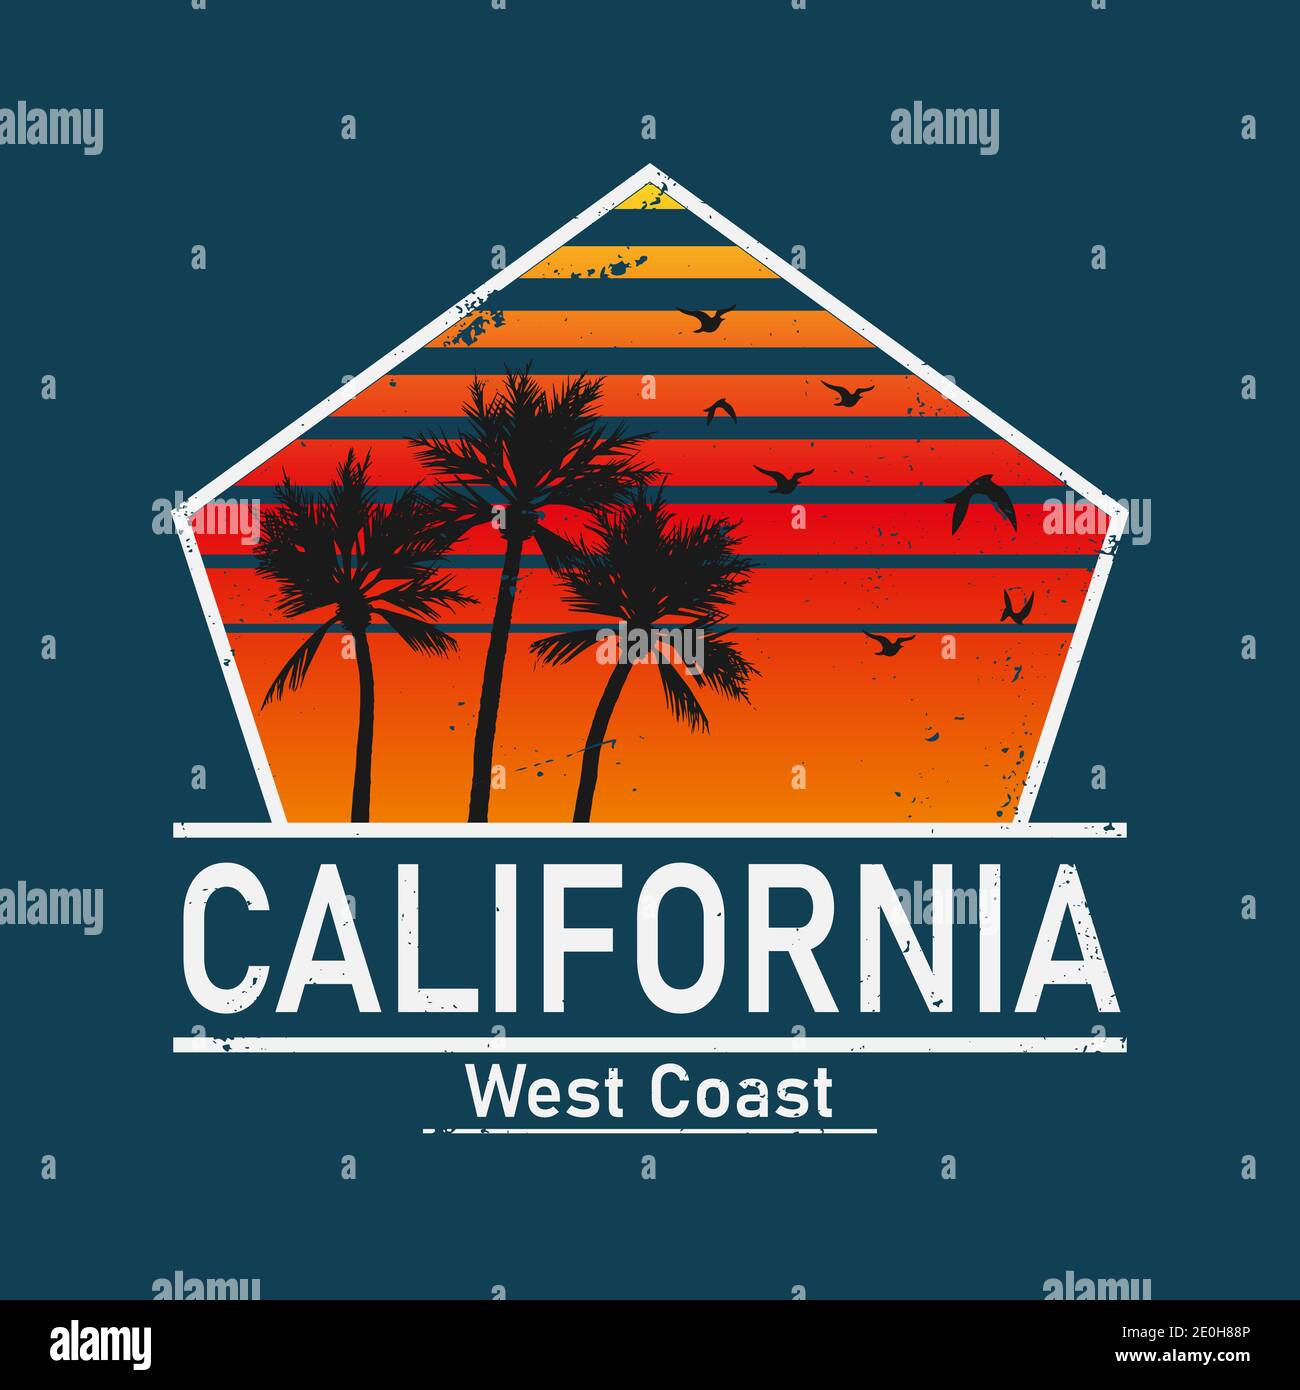 California West Coast surf illustration, vecteurs, t-shirt graphiques vêtements de surf t-shirt mode design, plage d'été palmier t-shirt graphique Illustration de Vecteur